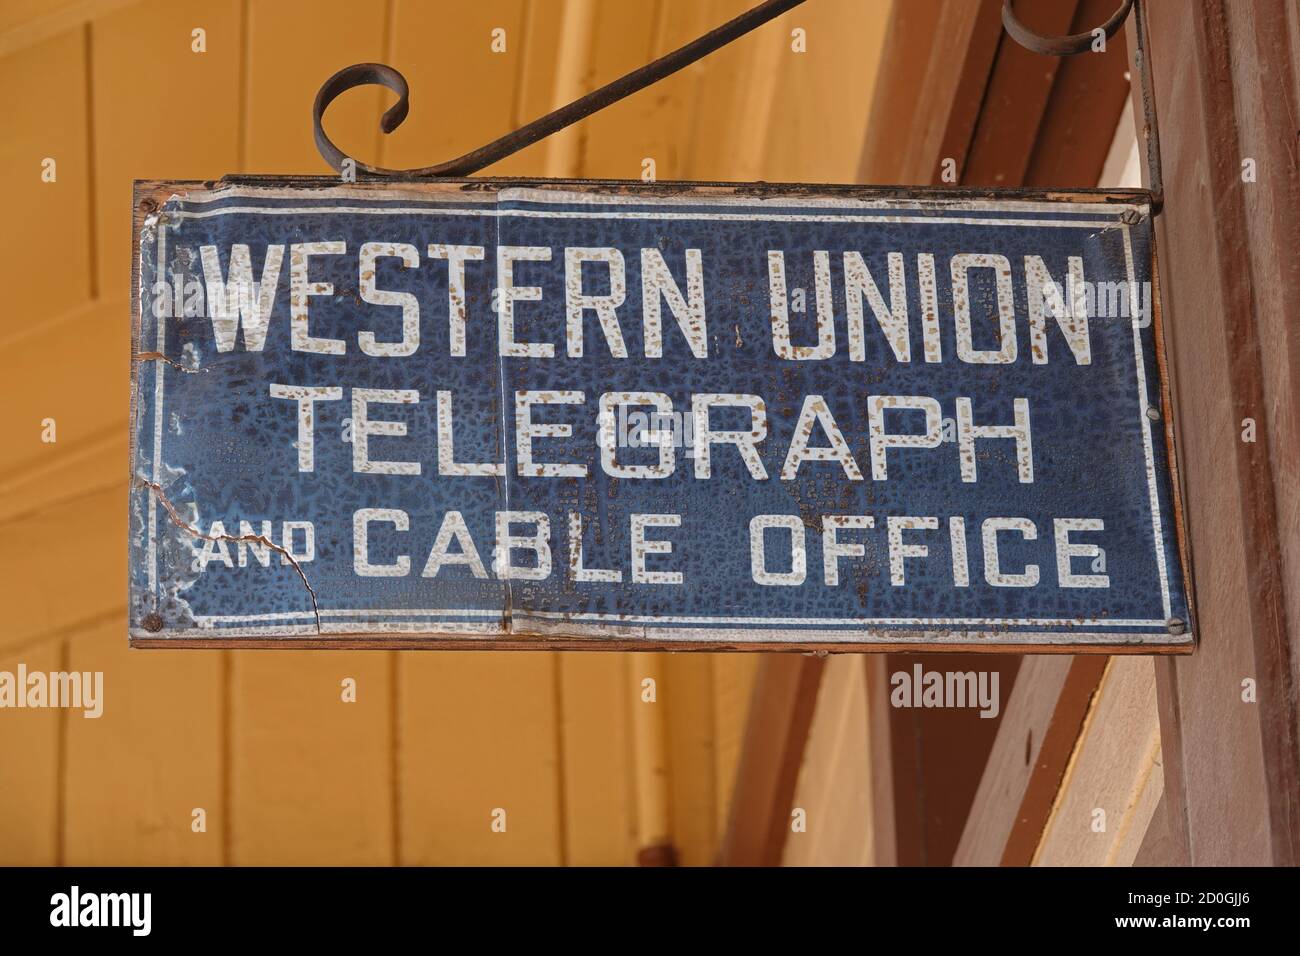 Santa Susana, CA / USA - 15. Juli 2020: Ein Western Union Telegraph und Cable Office Vintage-Schild hängt vor einem erhaltenen Bahnhof in Kalifornien. Stockfoto